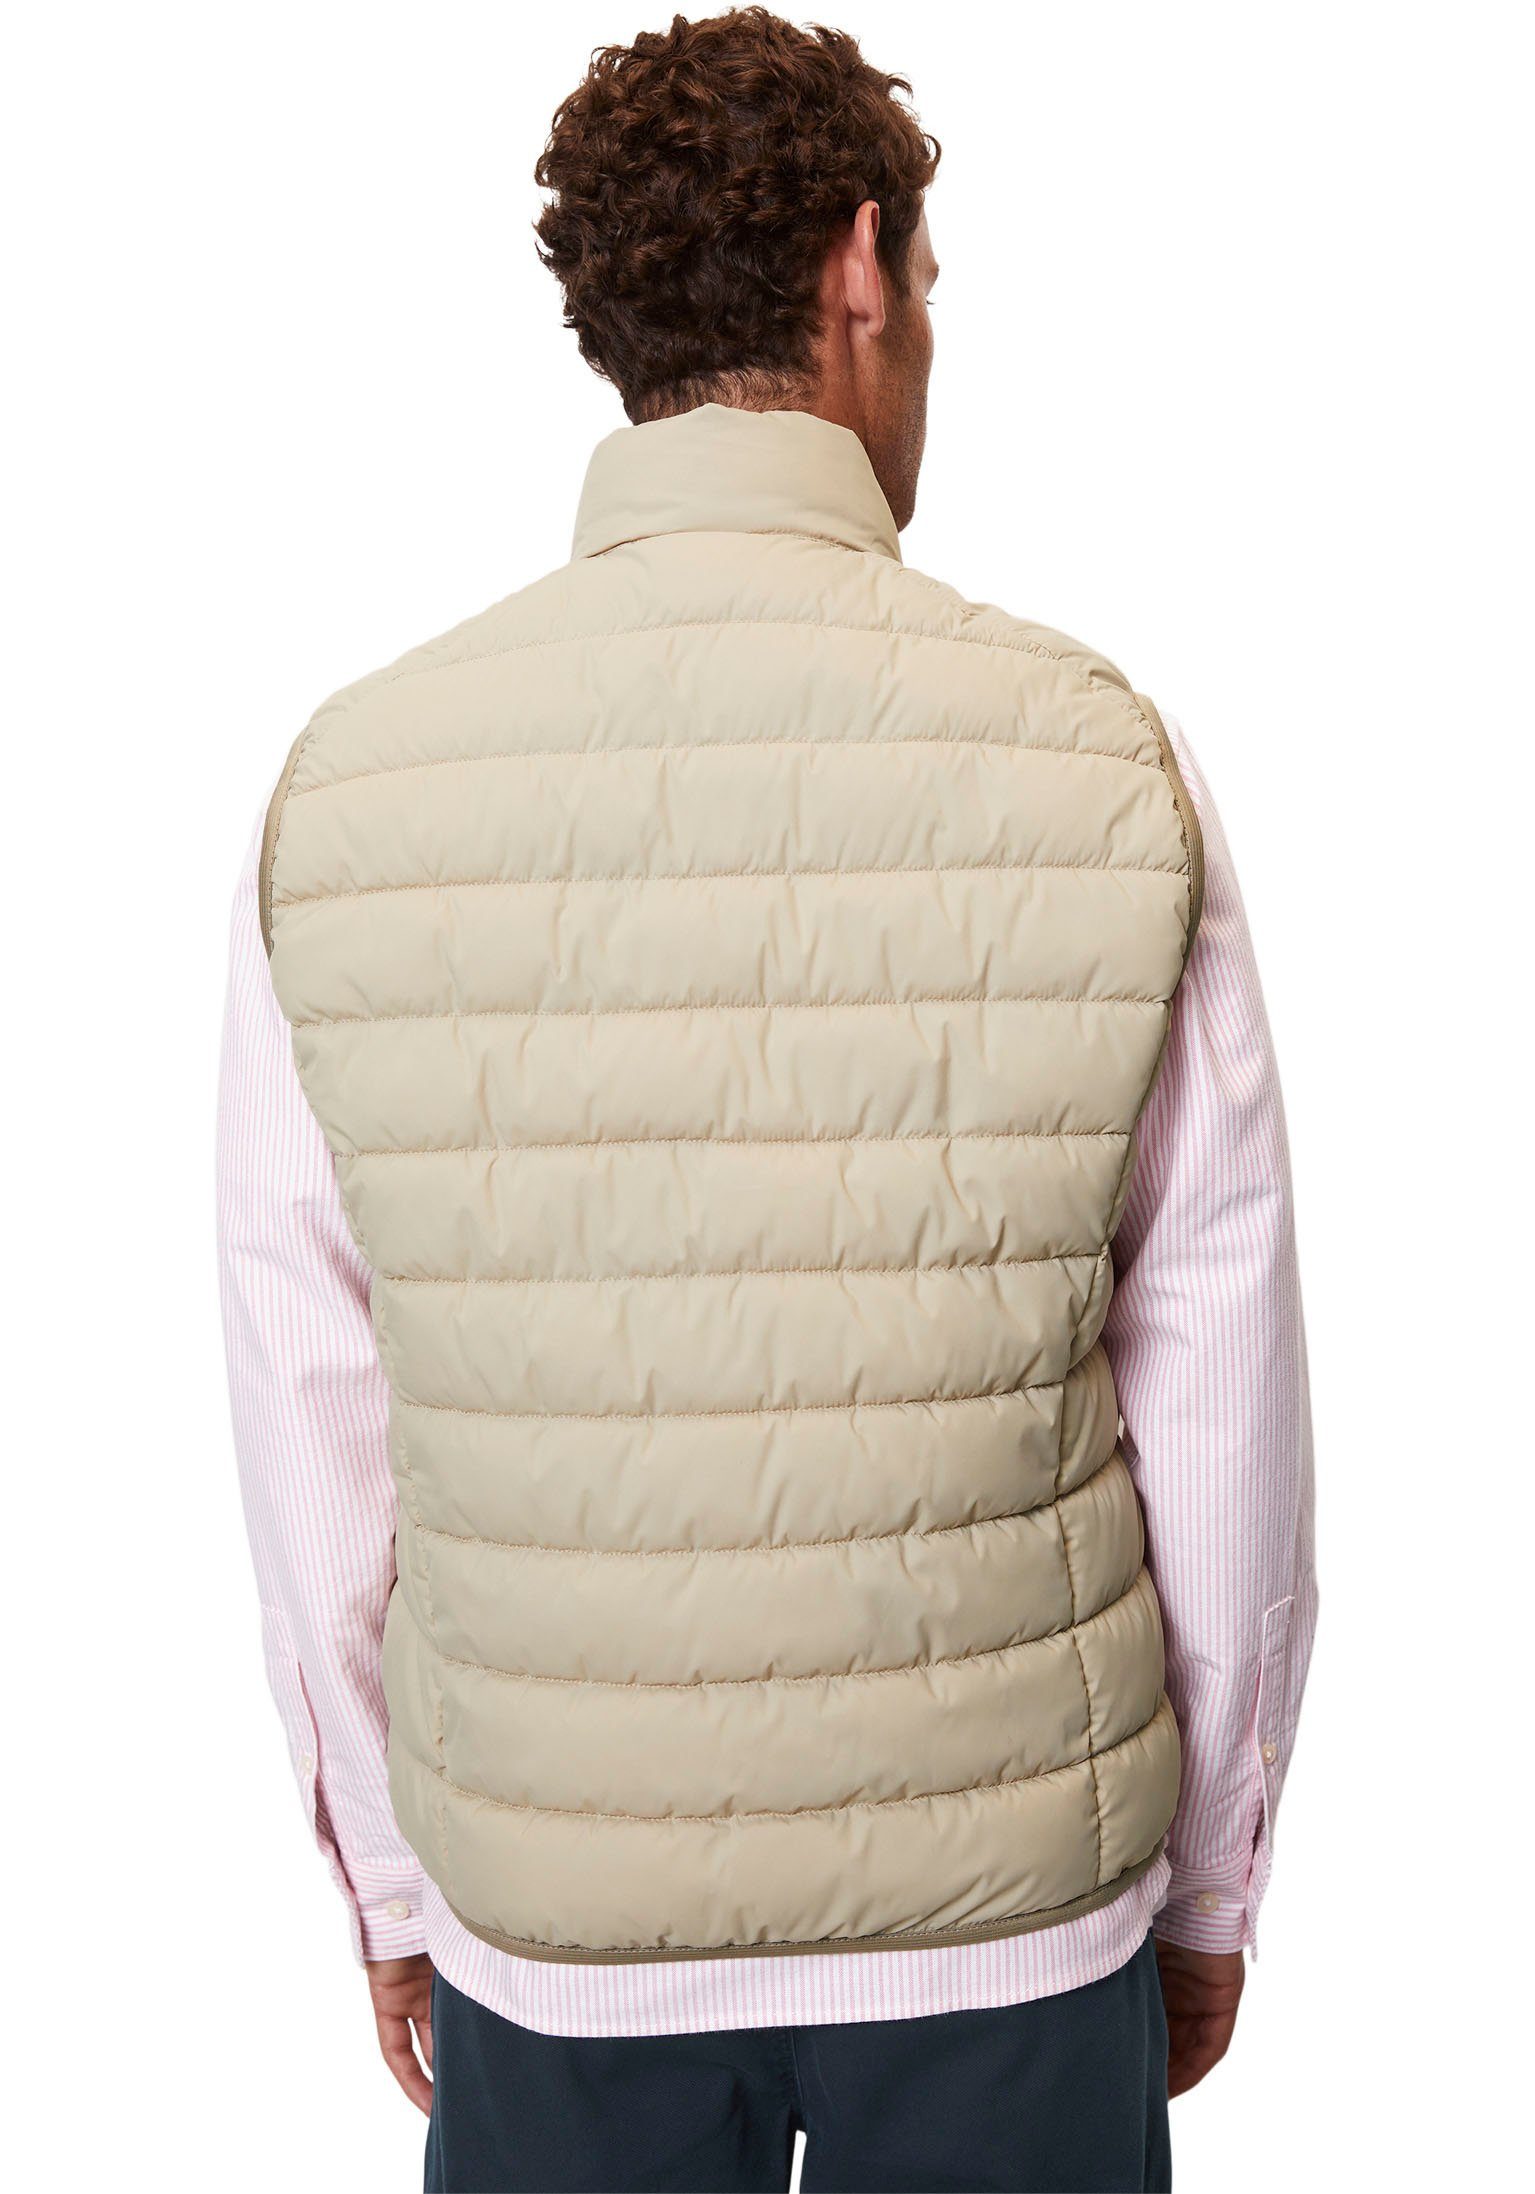 Marc O'Polo Steppweste Vest, sdnd, mit Oberfläche collar cream wasserabweisender jonesboro stand-up